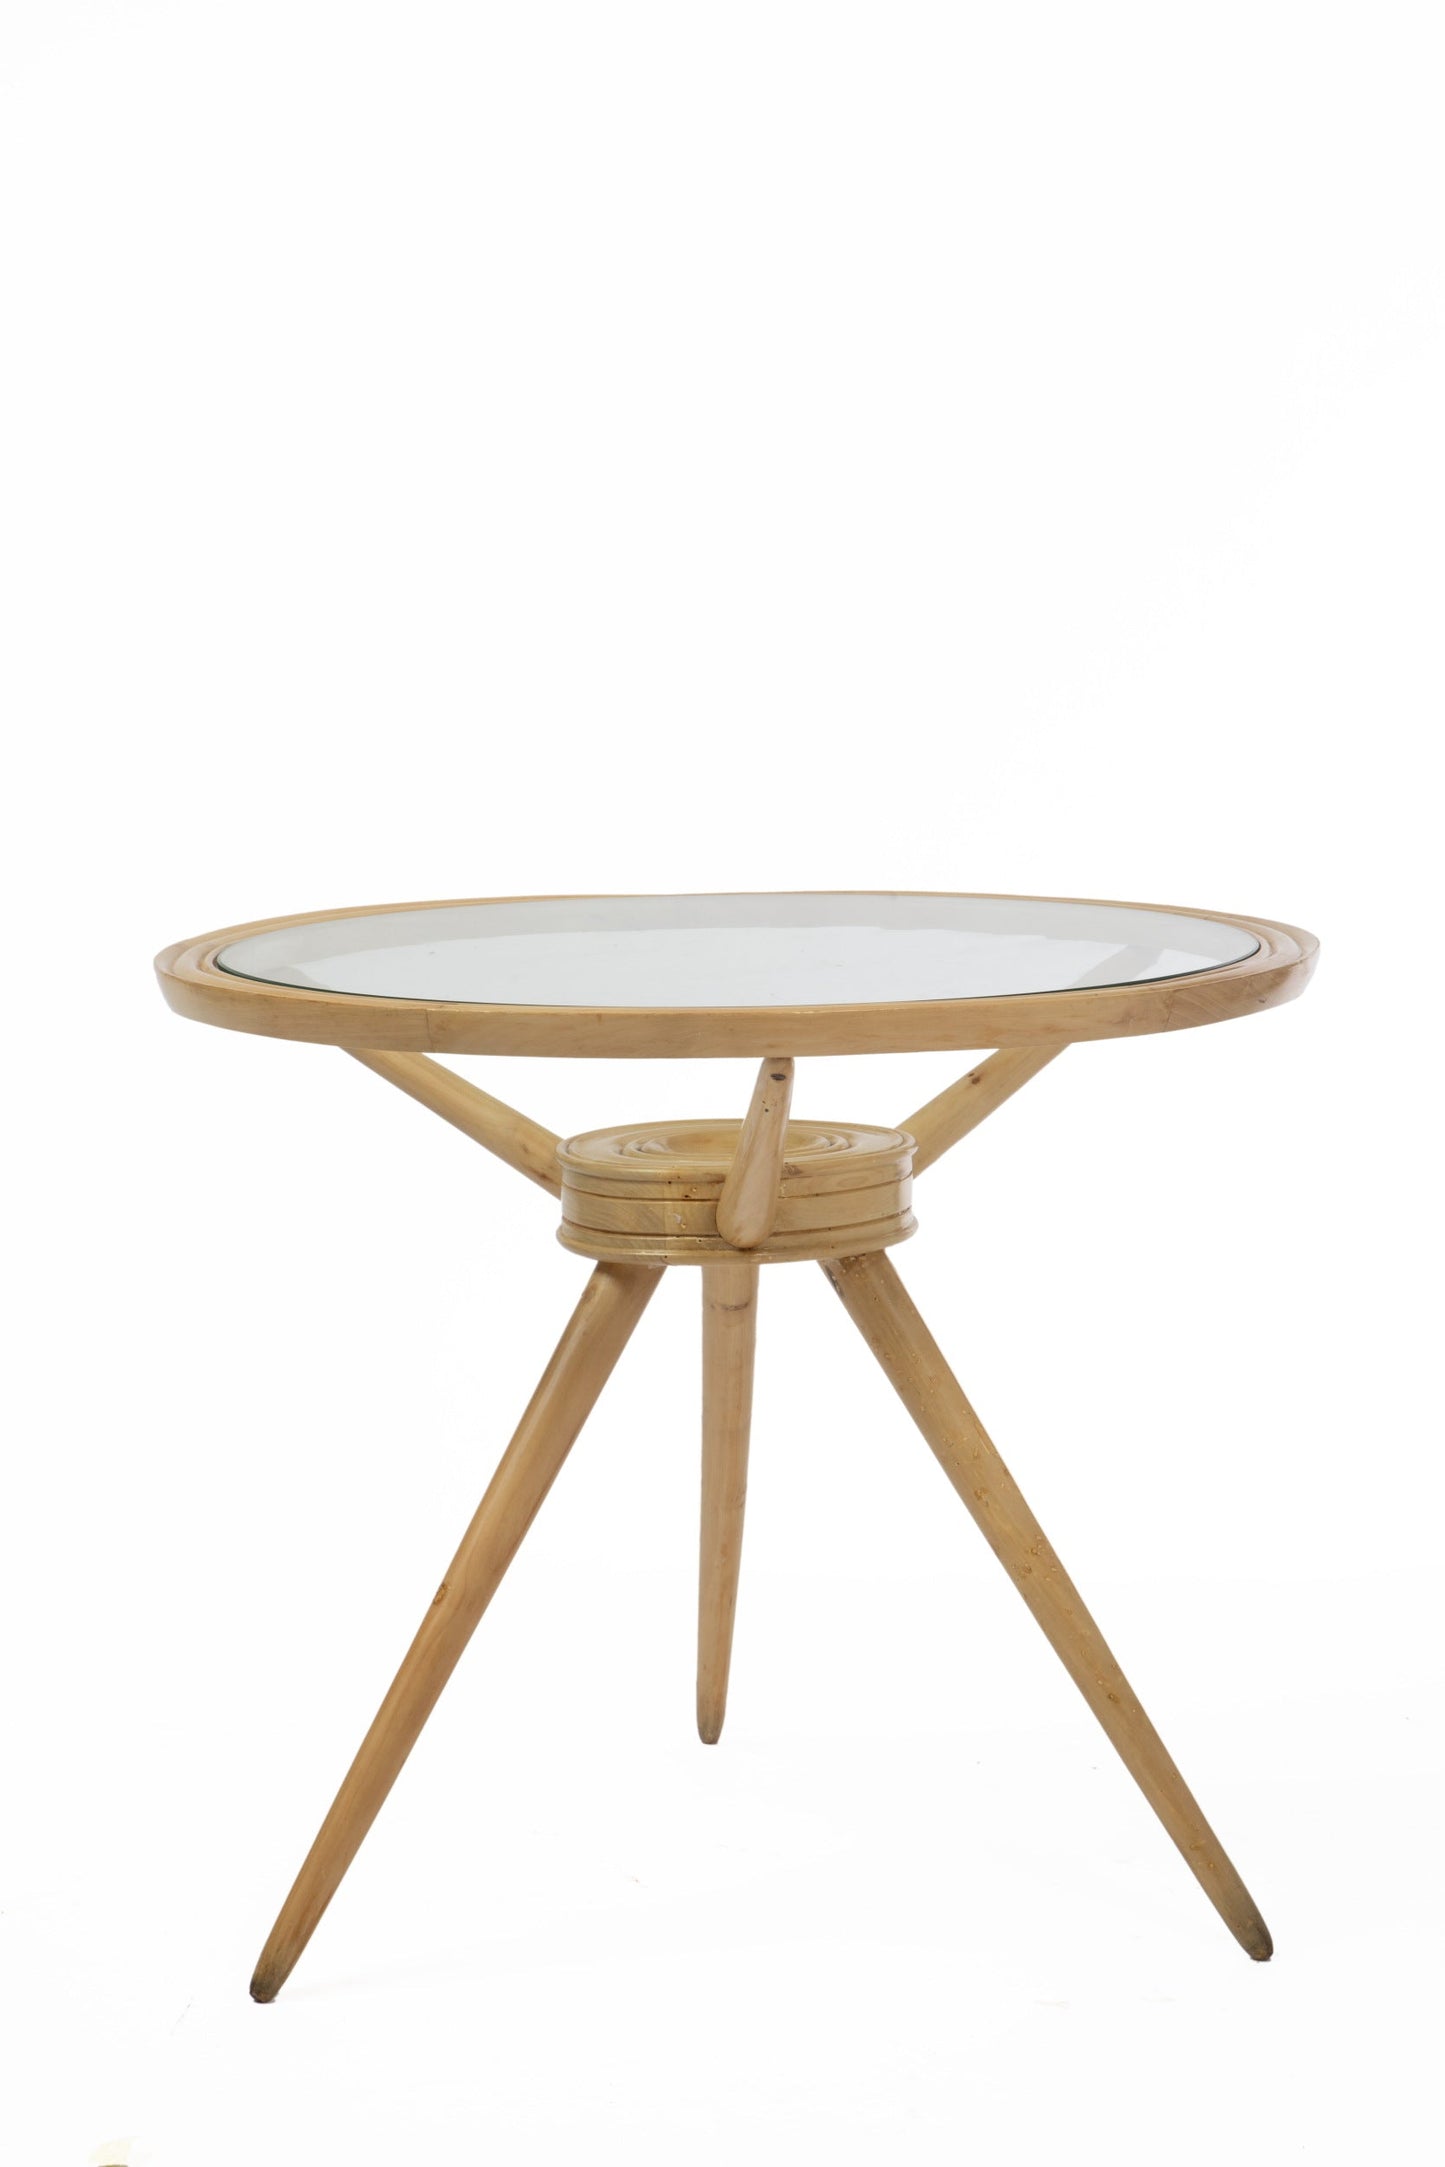 Piccolo tavolo Carlo De Carli anni 50